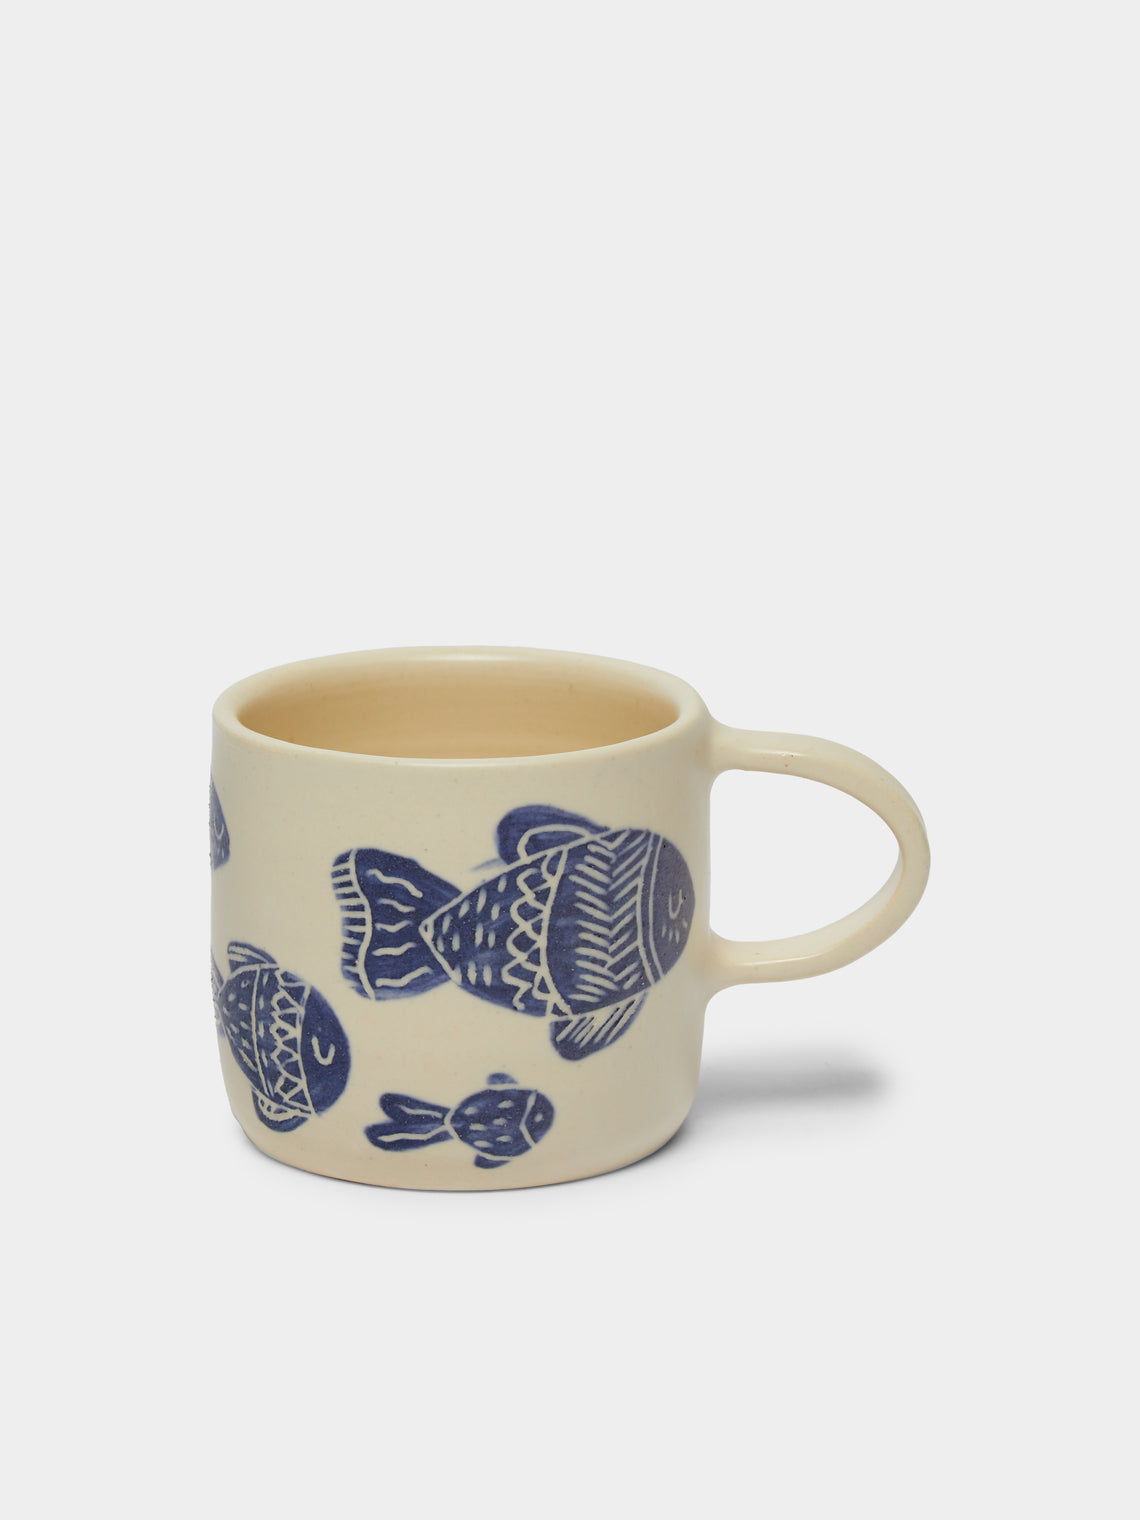 Azul Patagonia - Fish Hand-Painted Ceramic Mug -  - ABASK - 